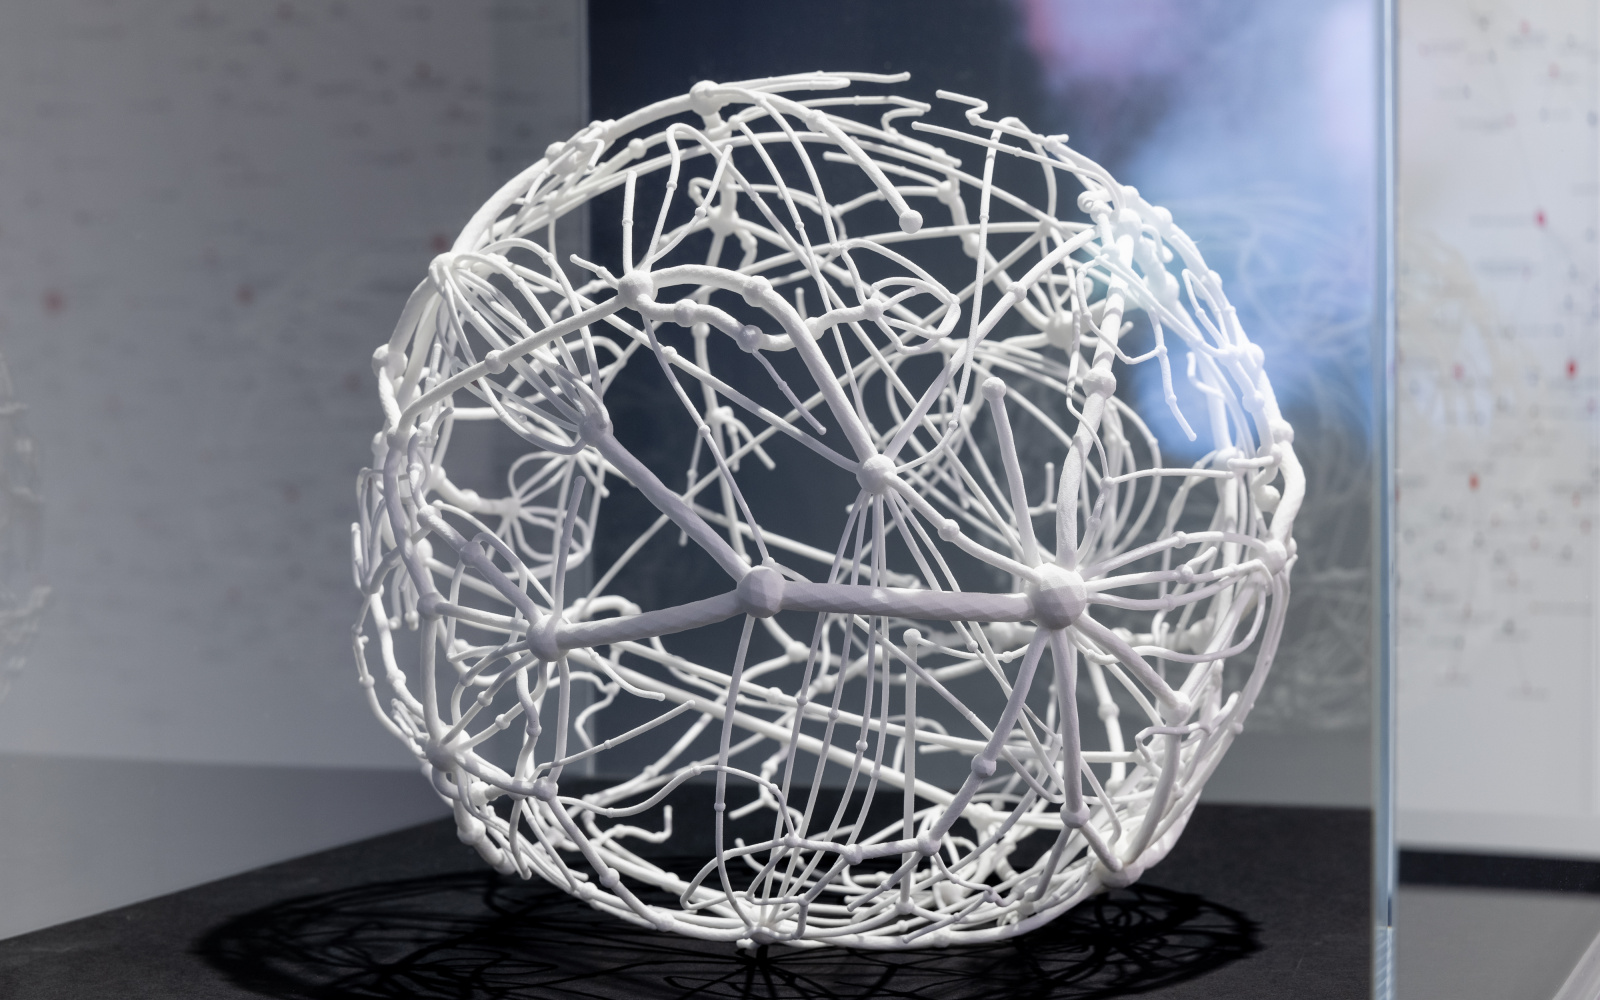 Ein 3D-Druck einer Kugel, die aus einem eng verzweigten Netzwerk besteht.